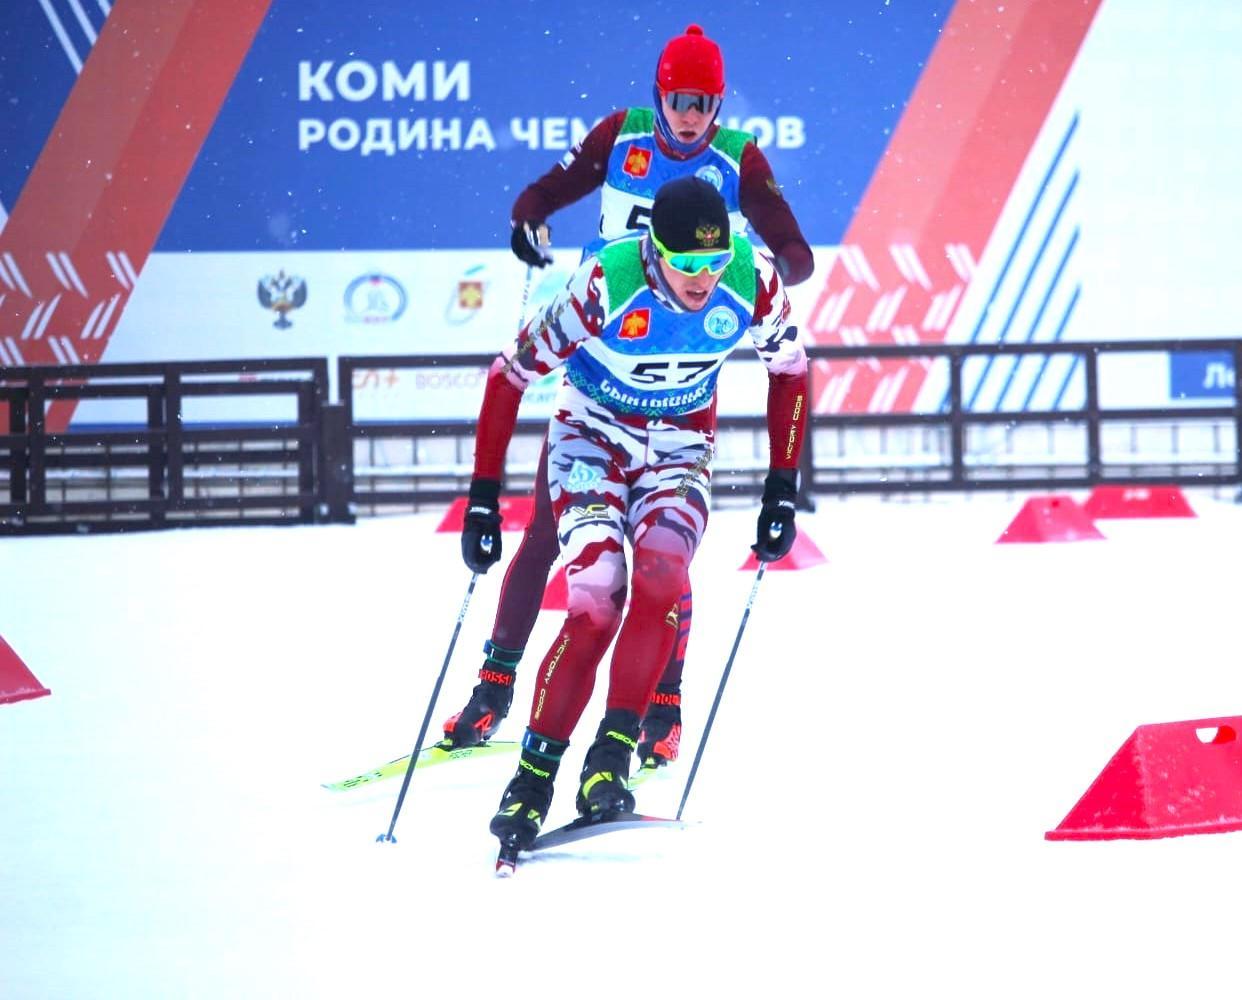 Якутянин Михаил Соснин выиграл лыжную гонку у олимпийского чемпиона Сергея Устюгова